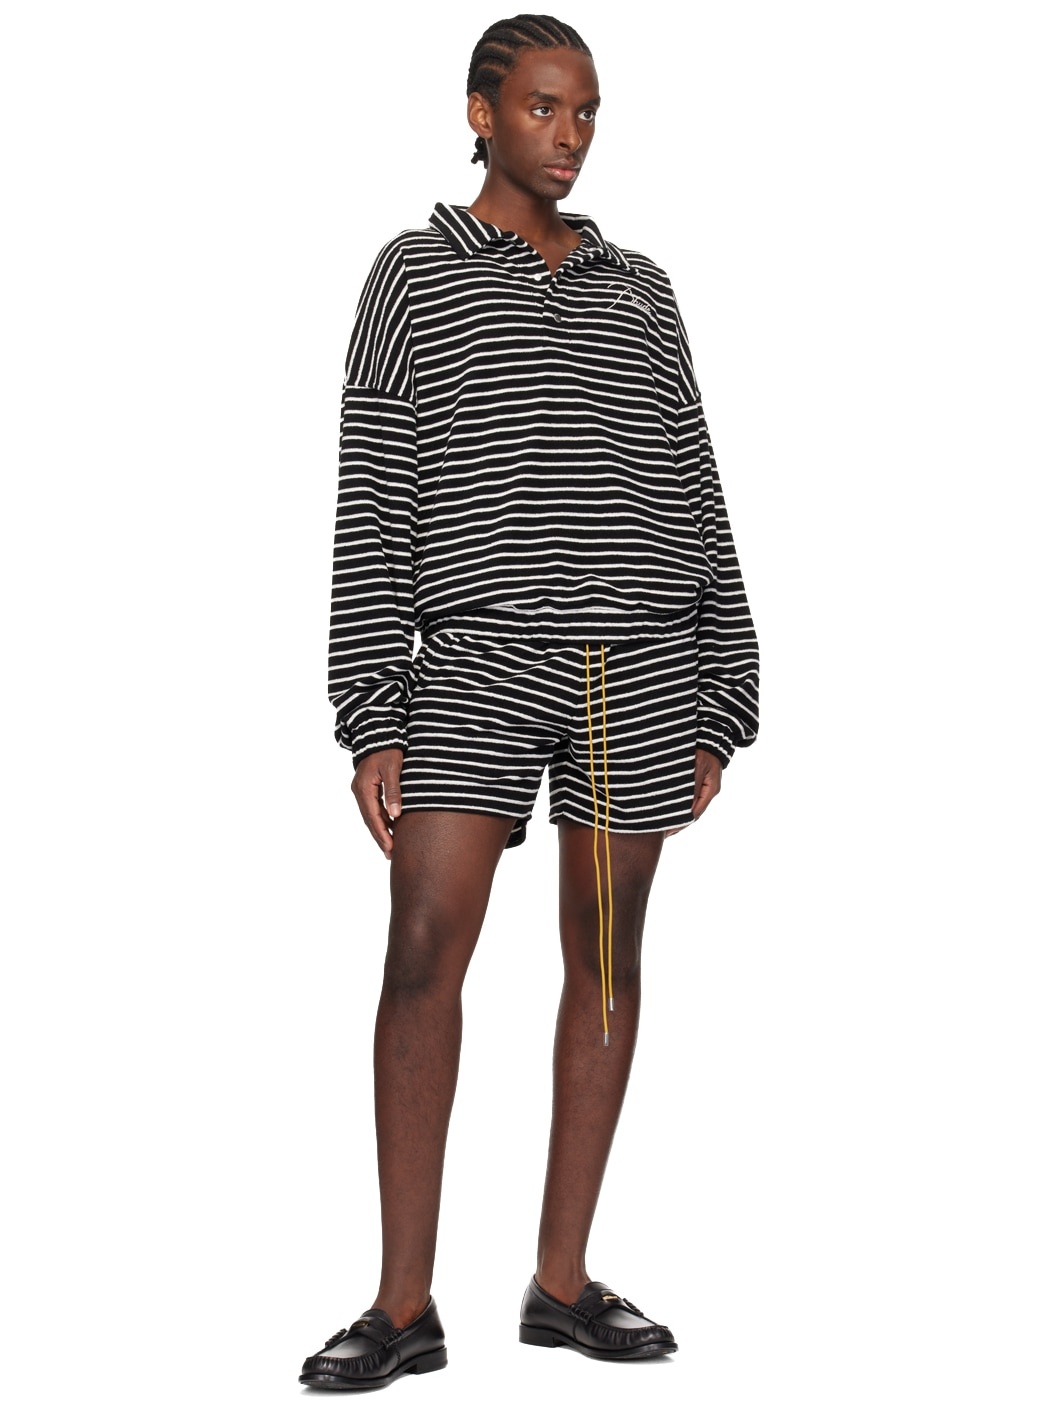 Black & White Striped Shorts - 4